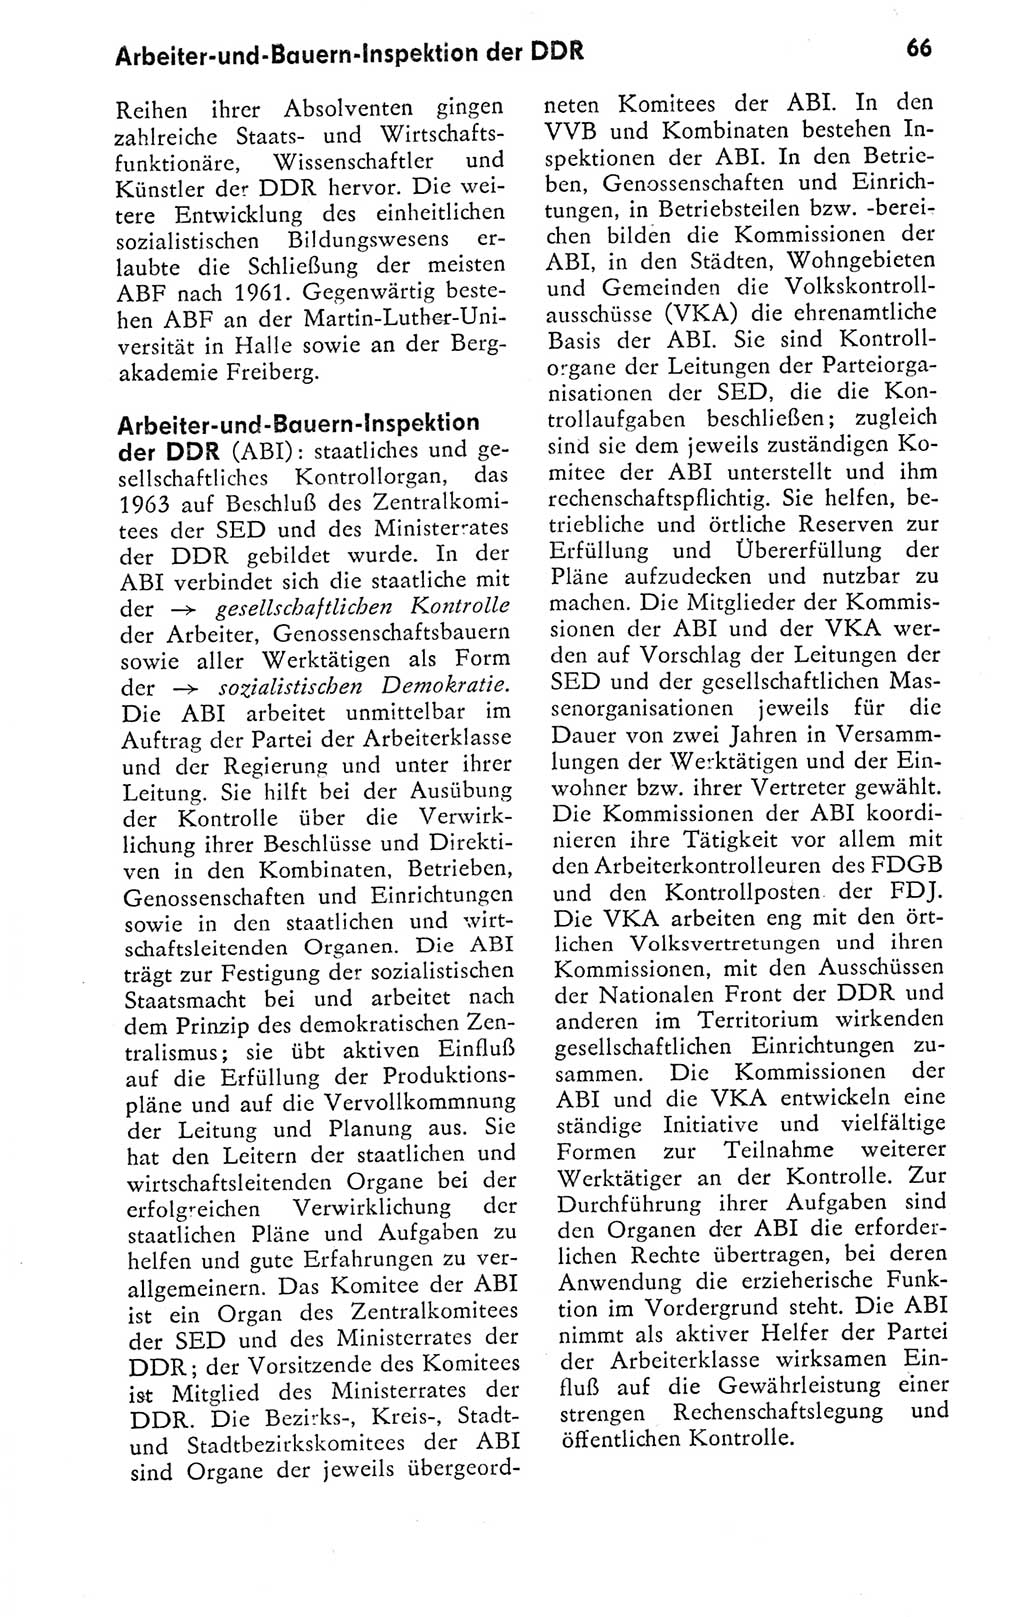 Kleines politisches Wörterbuch [Deutsche Demokratische Republik (DDR)] 1978, Seite 66 (Kl. pol. Wb. DDR 1978, S. 66)